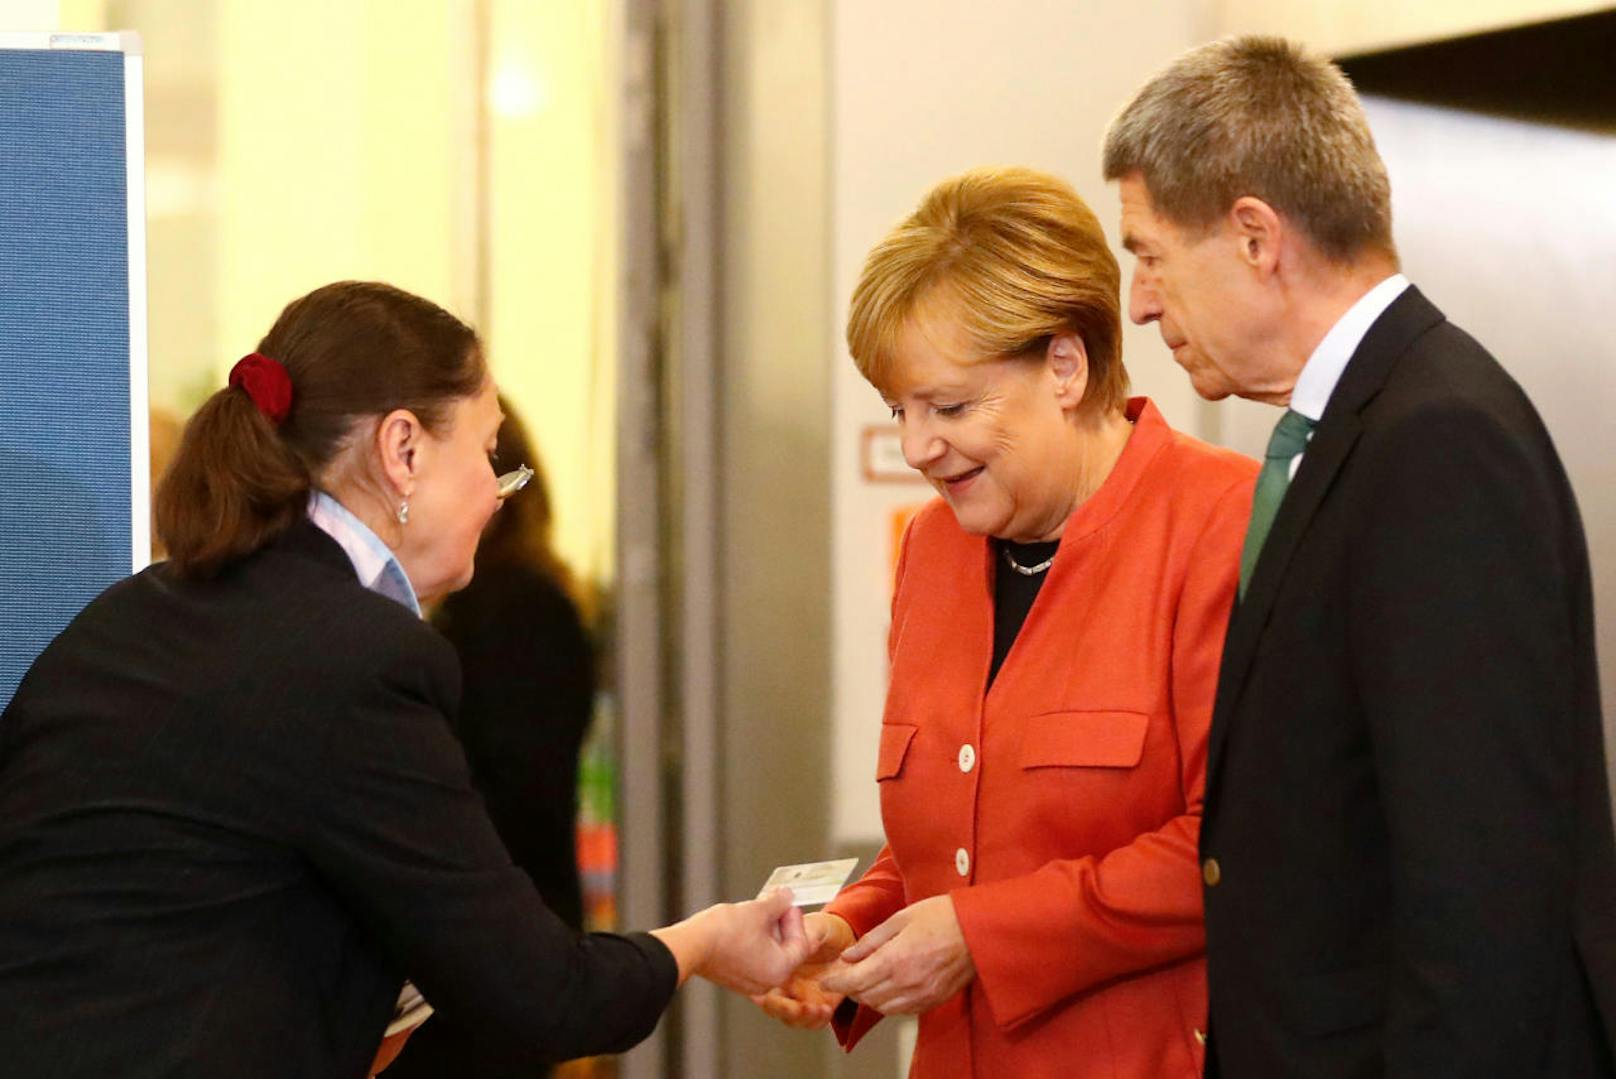 Angela Merkel beim Ausweis-Check